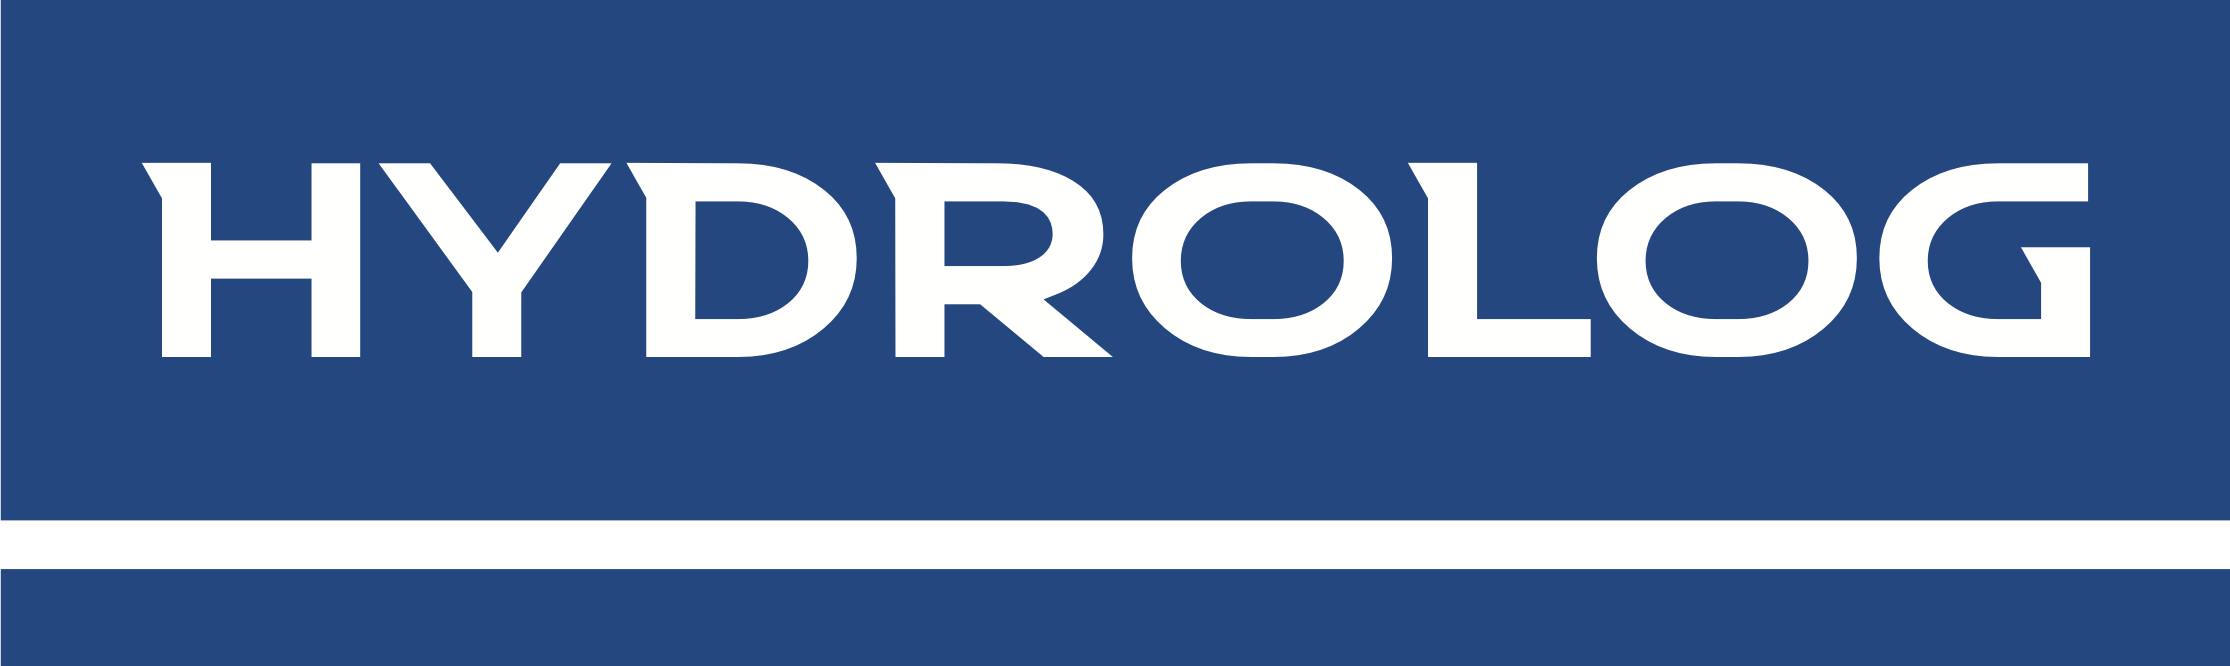 Logo do http://hydrolog.com.br